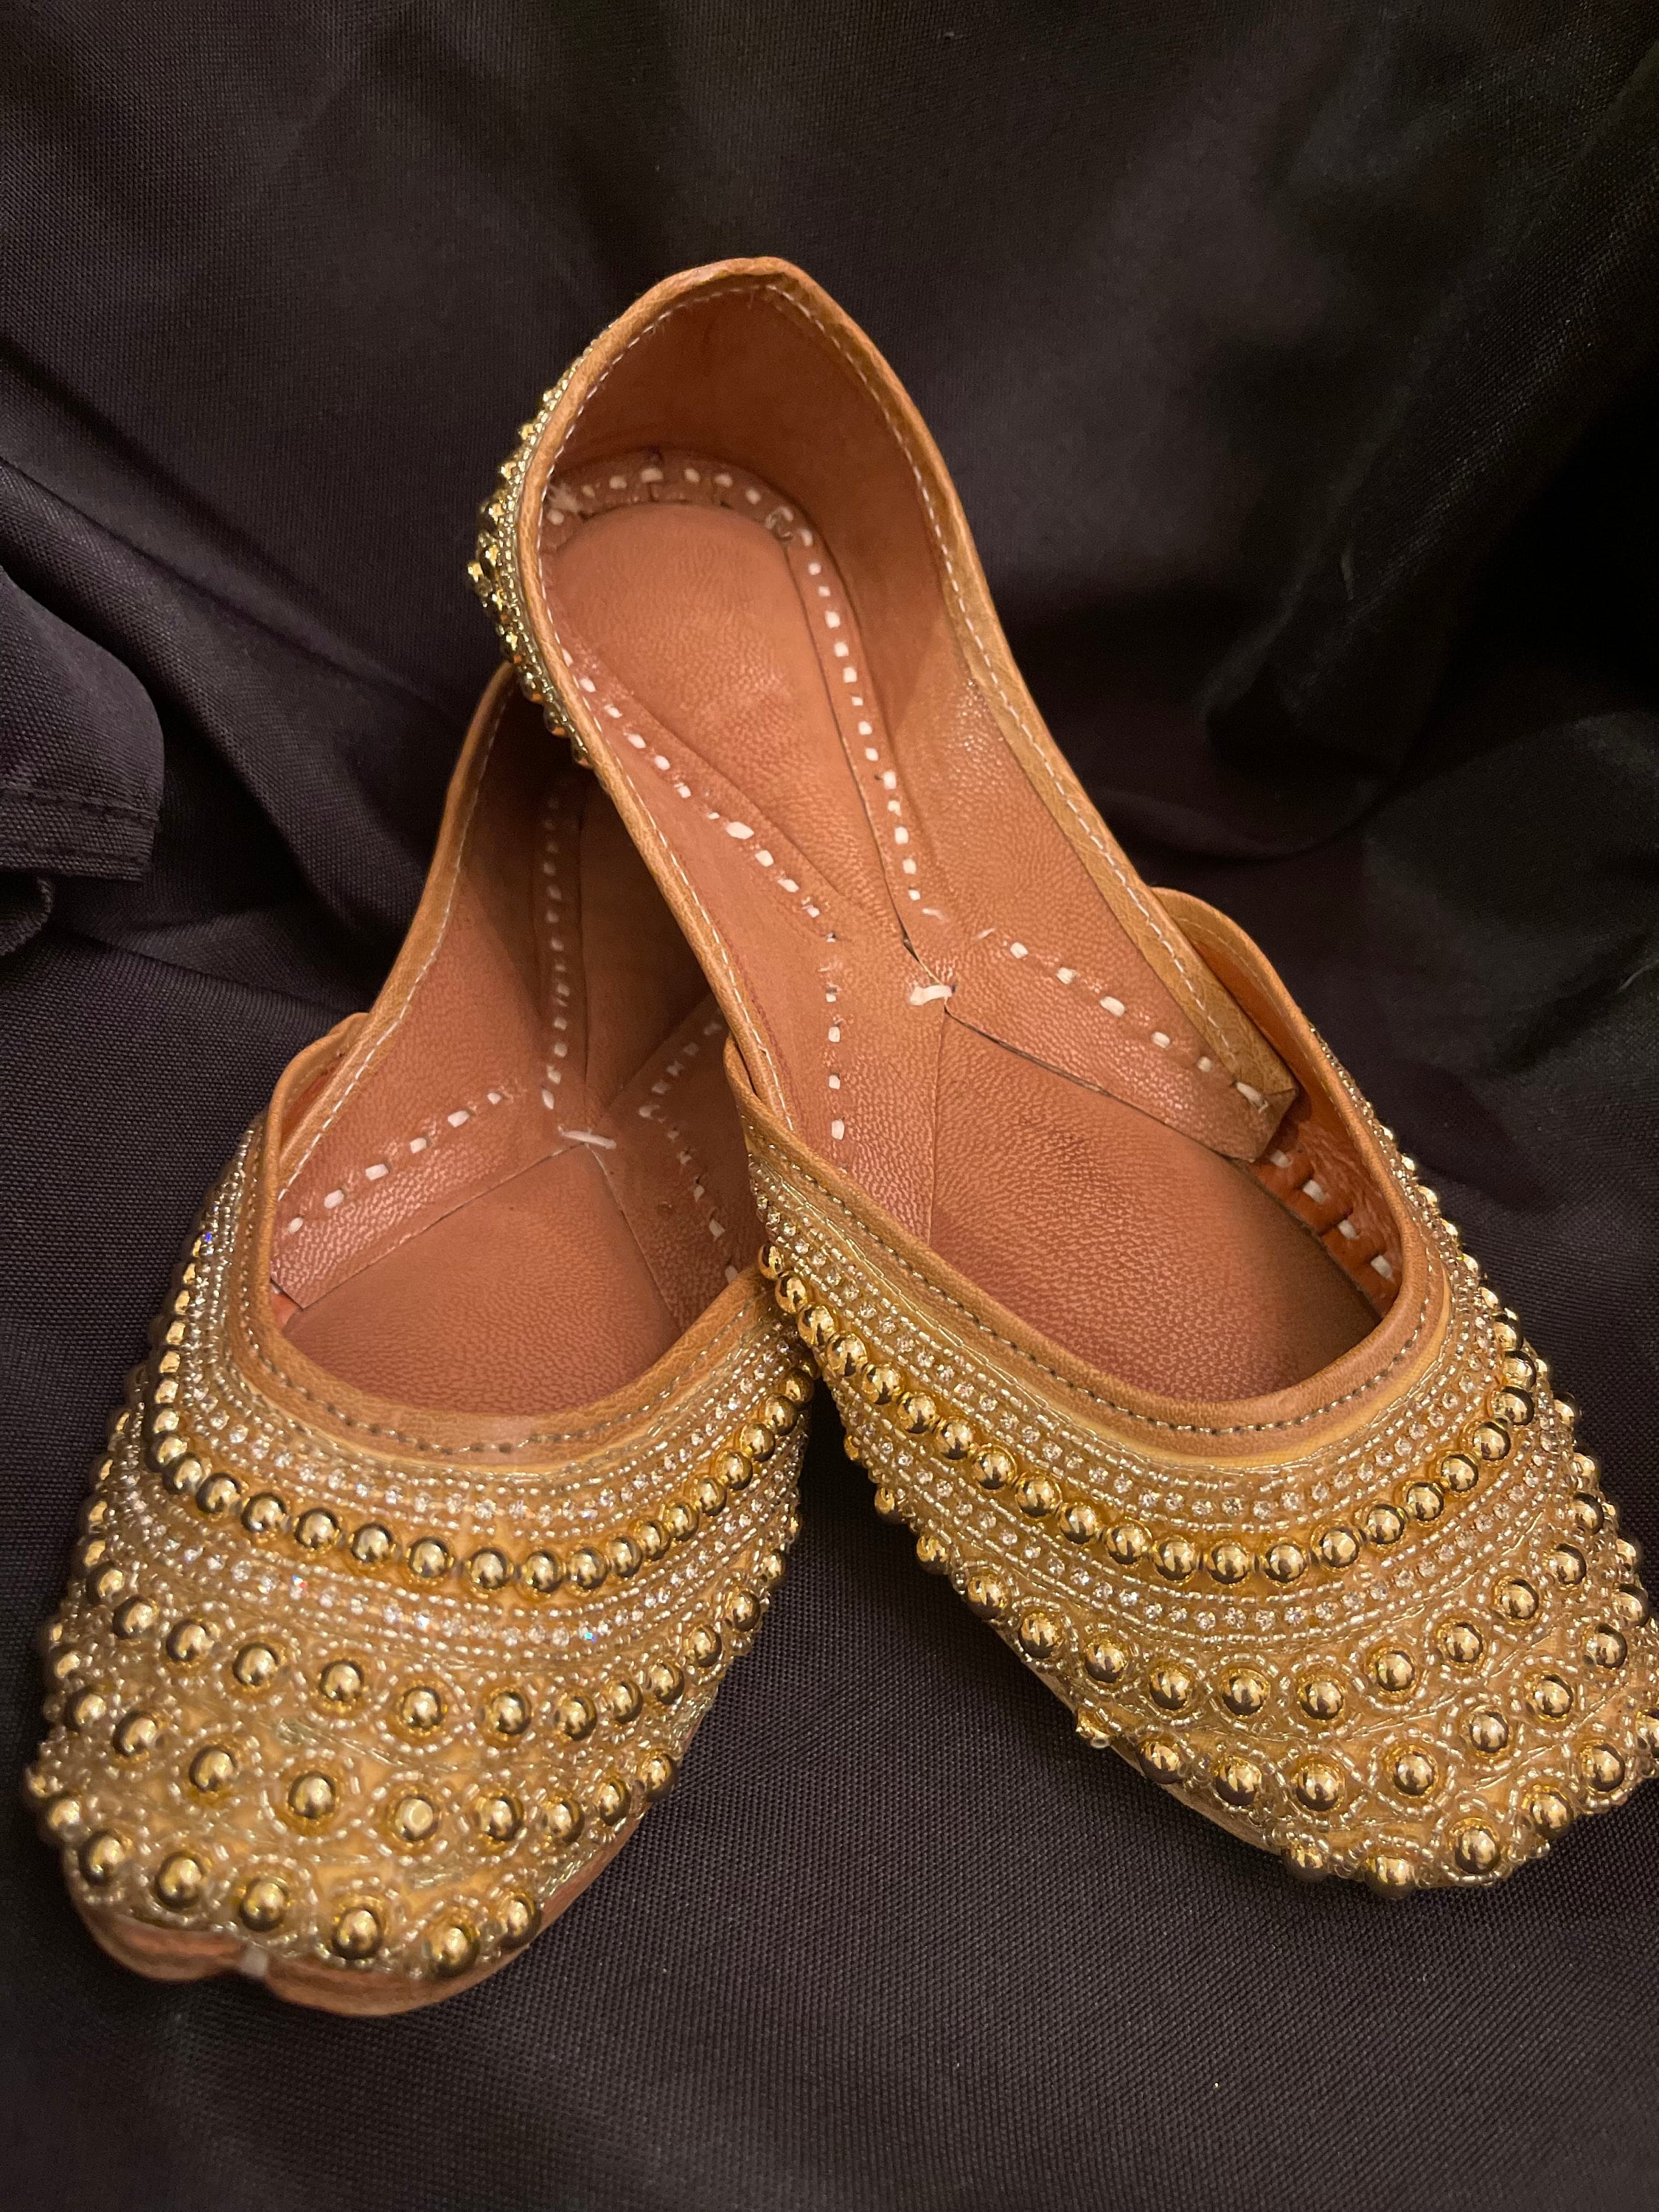 Shoes Womens Shoes Slip Ons Juttis & Mojaris Gift For Her Wedding Bridal Shoes Black Khussa Luxury Handmade Ladies Pakistani Indian Khusa Sandal Mojaris Punjabi Jutti 